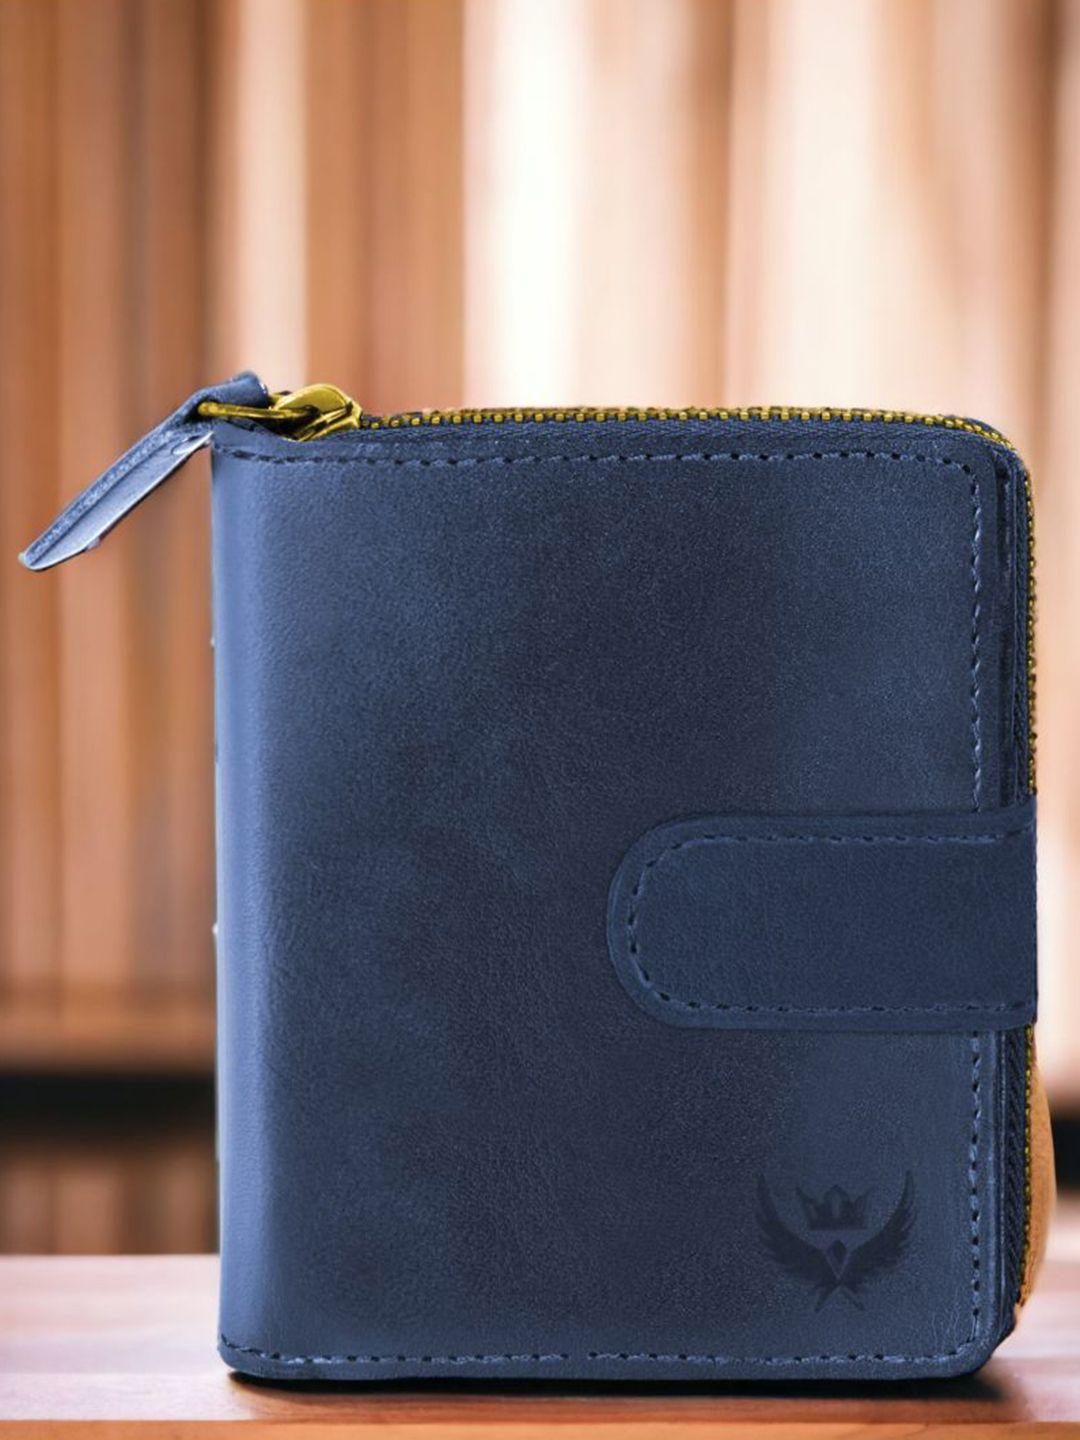 lorenz men blue leather zip around wallet